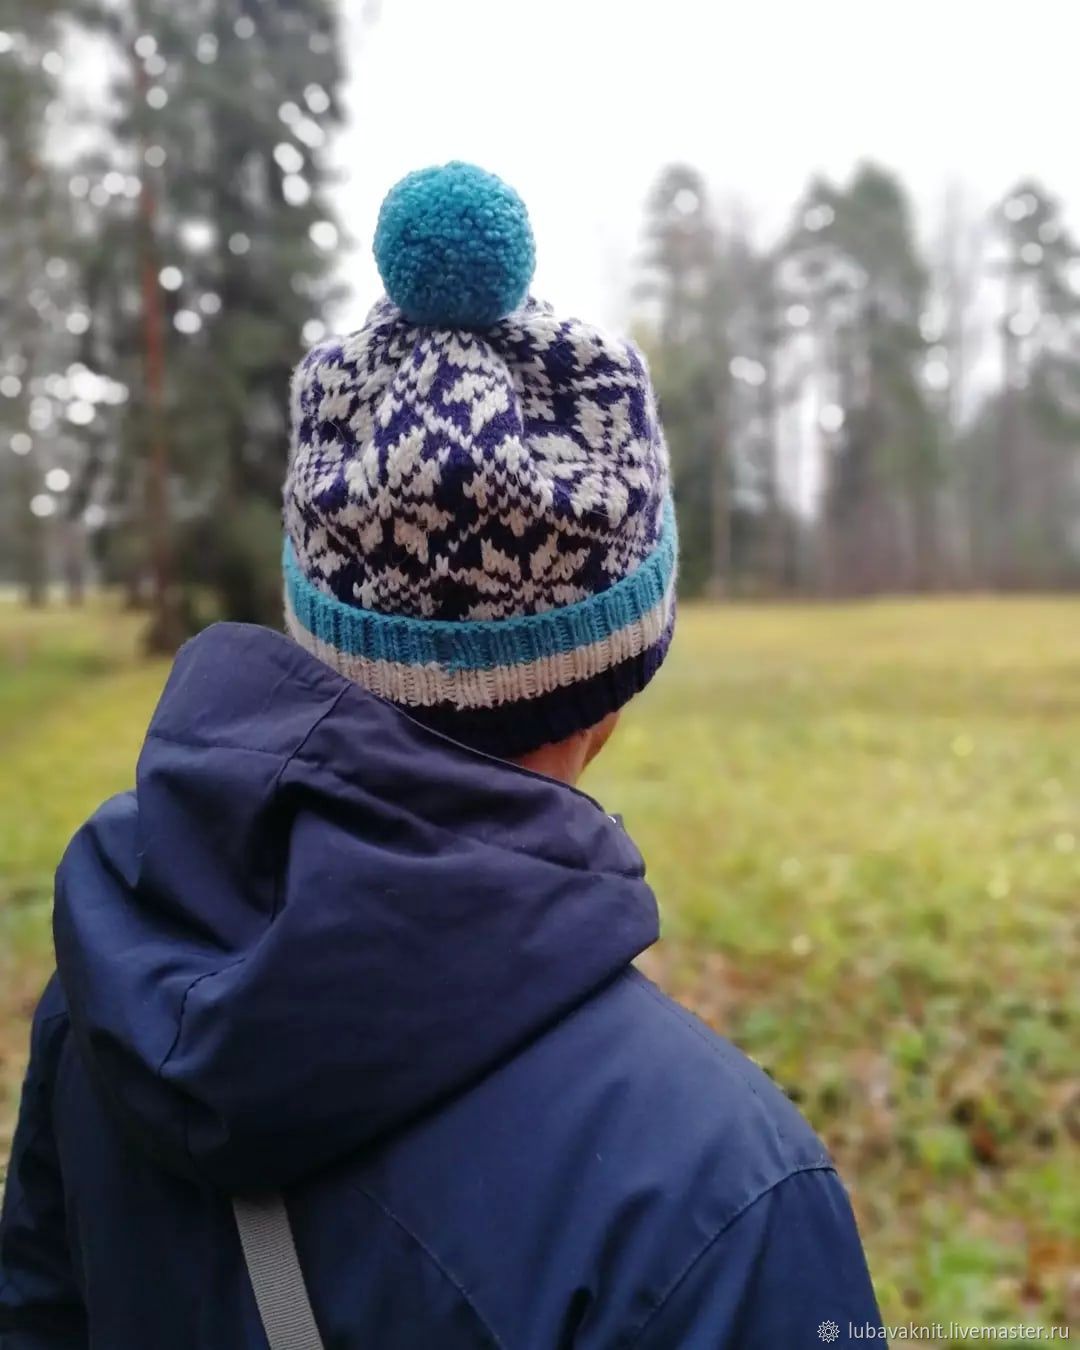 Модные мужские вязаные шапки этого сезона - фотодетки.рф